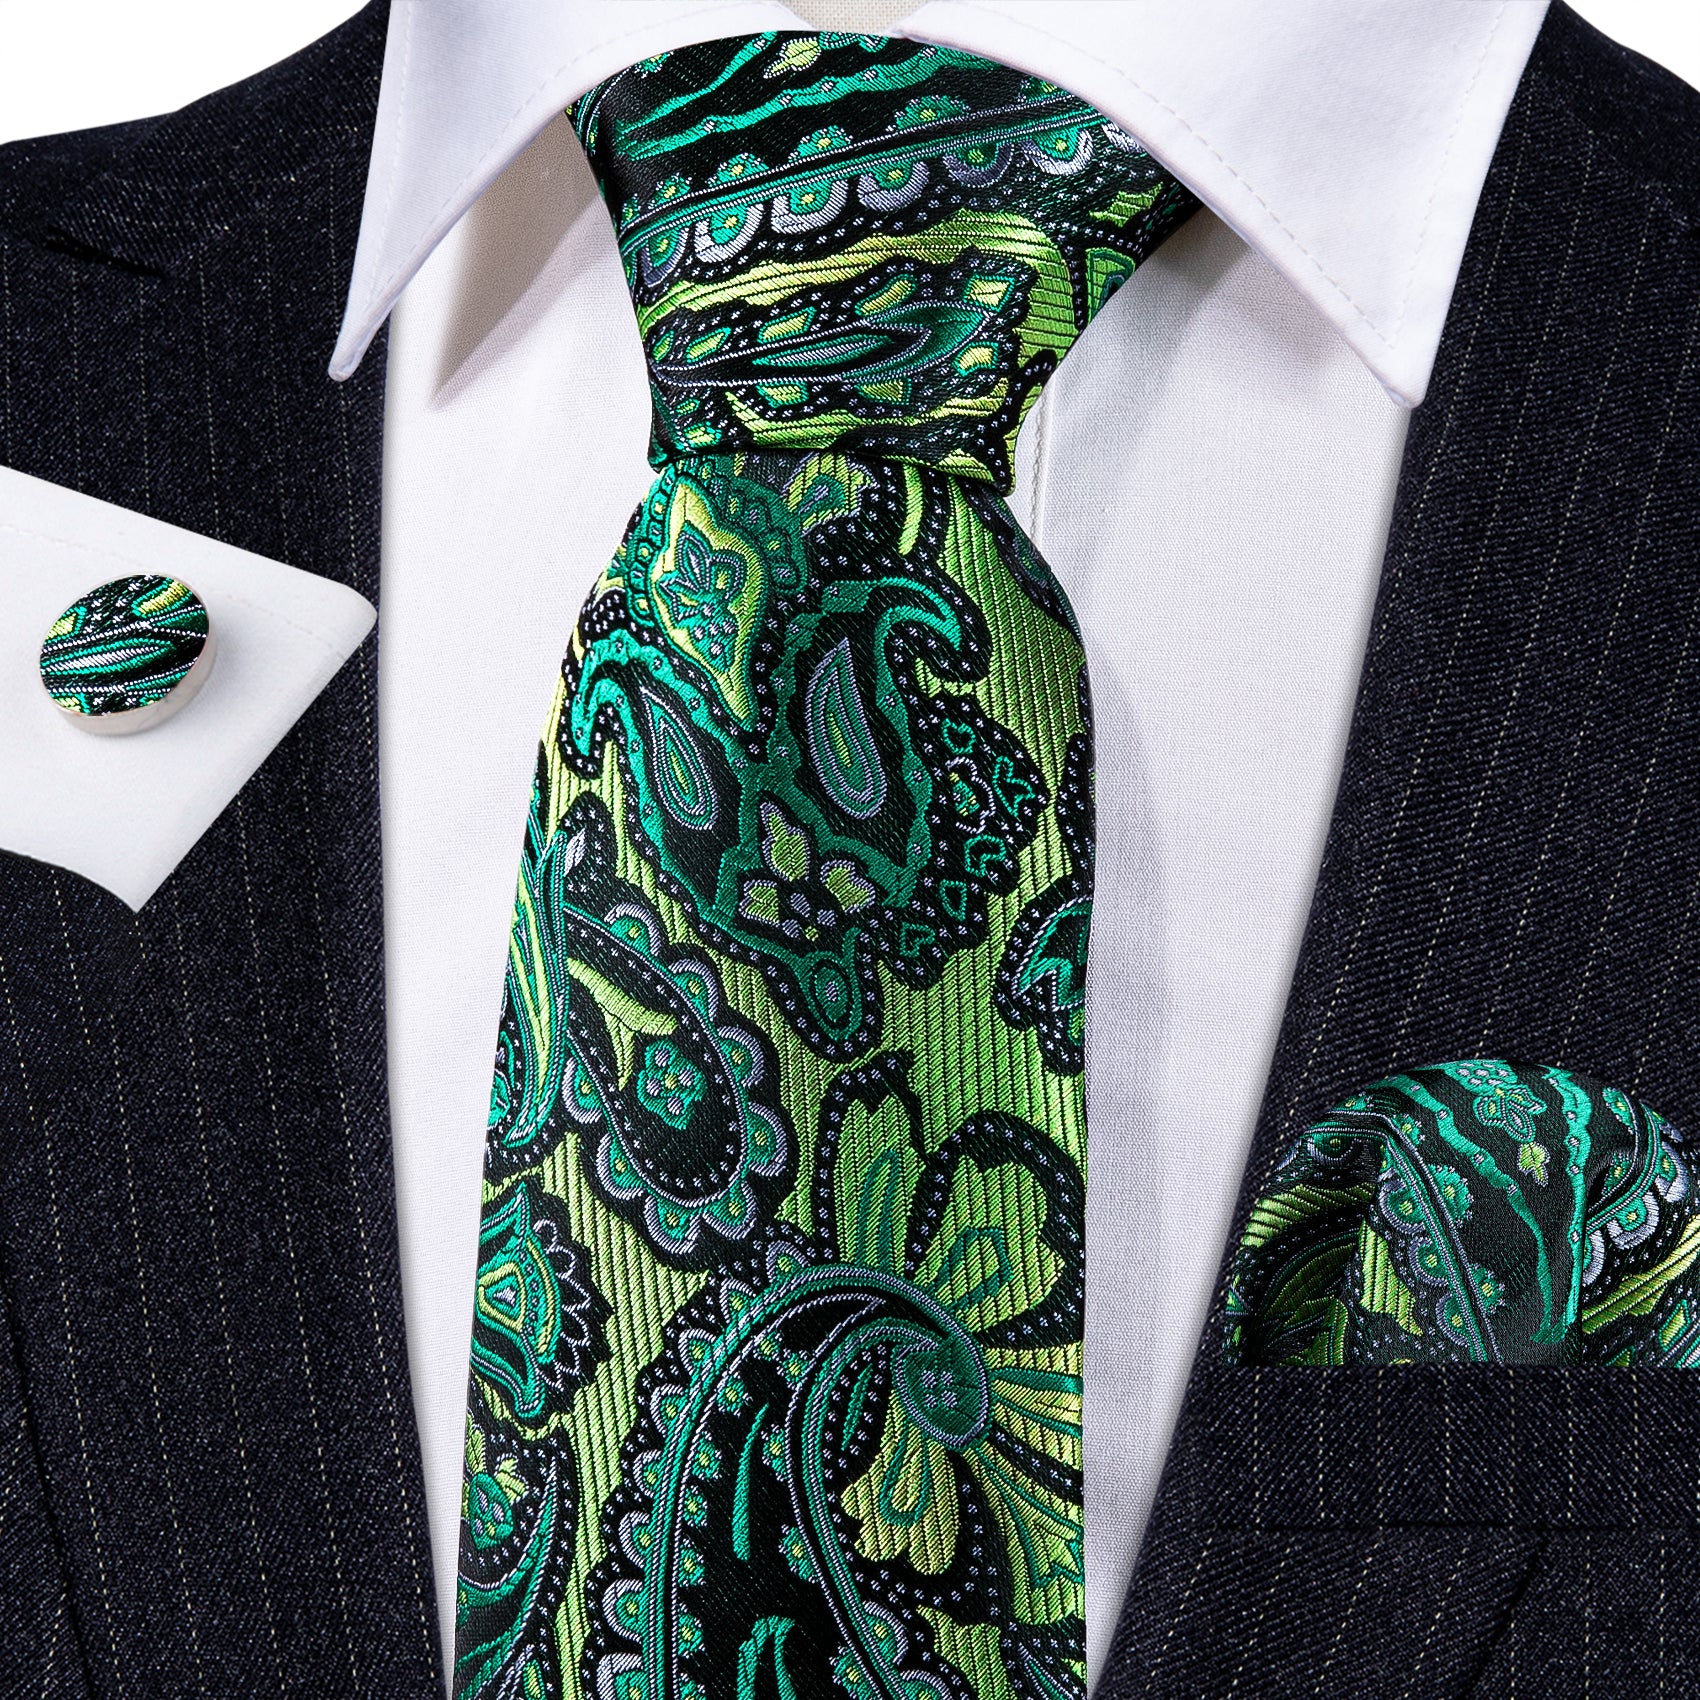 Barry.wang Green Tie Paisley Silk Men's Tie Handkerchief Cufflinks Set